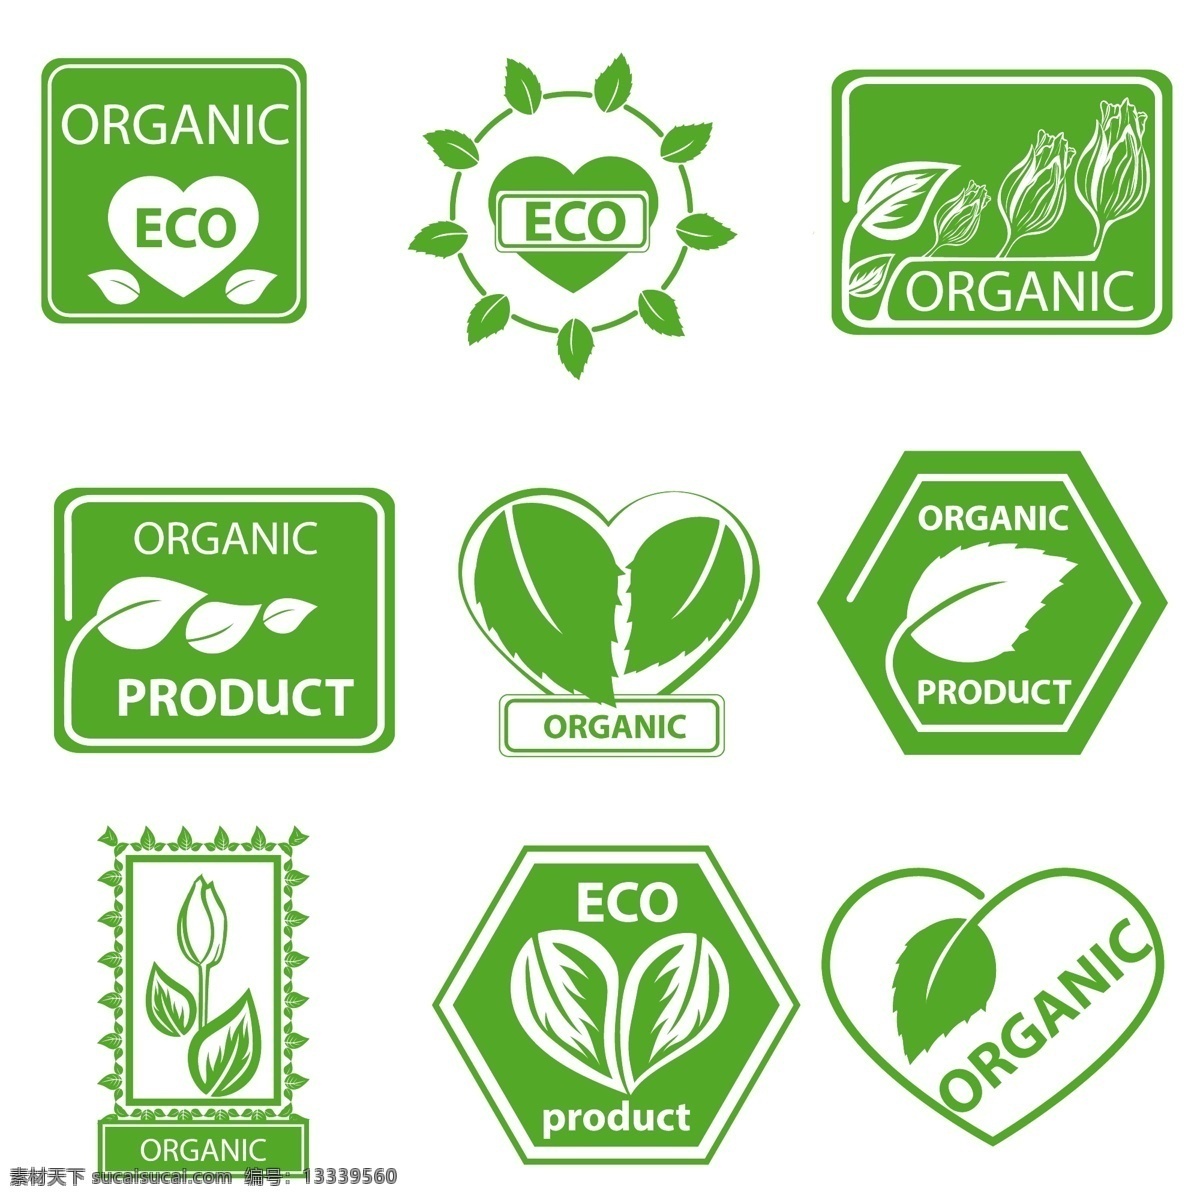 生态 环境保护 图标 矢量 生态环境 环保 标志 绿叶 叶子 绿色植物 环保标志 图标生态 环保绿色 环保环境 保护生态